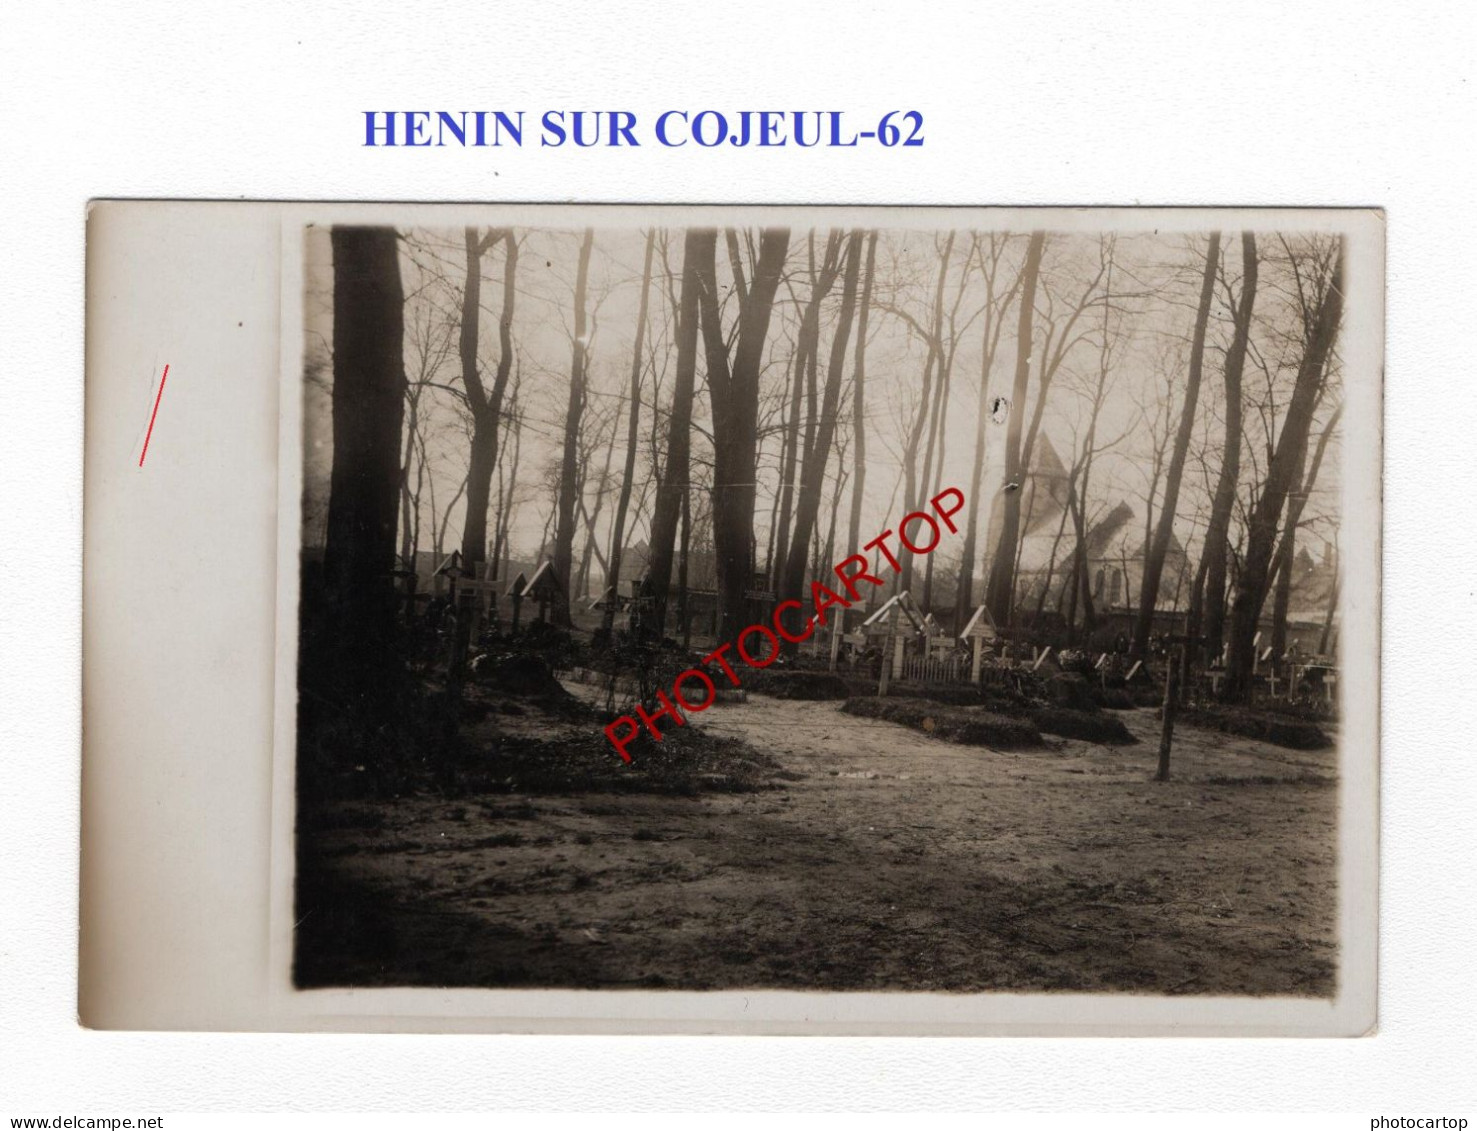 HENIN SUR COJEUL-62-Cimetiere-Tombes-CARTE PHOTO Allemande-GUERRE 14-18-1 WK-MILITARIA- - Cimetières Militaires